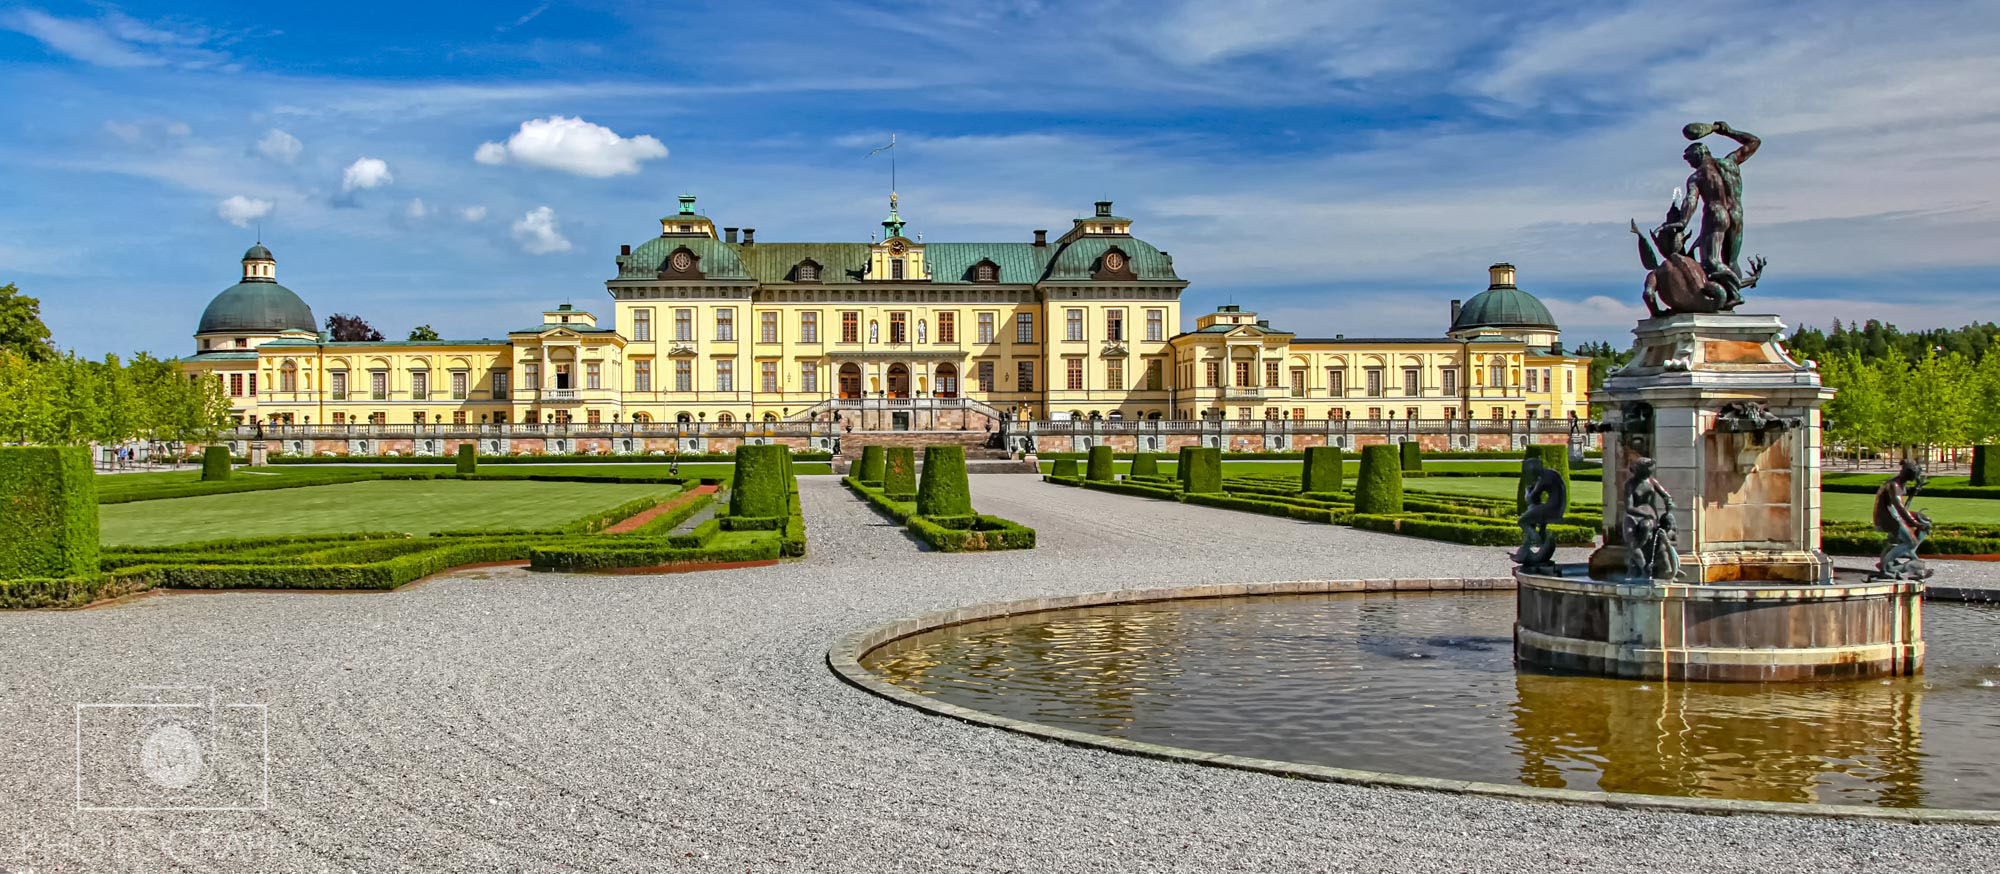 Čestná stráž, palác Kráľovský palác Drottningholm, Švédsko